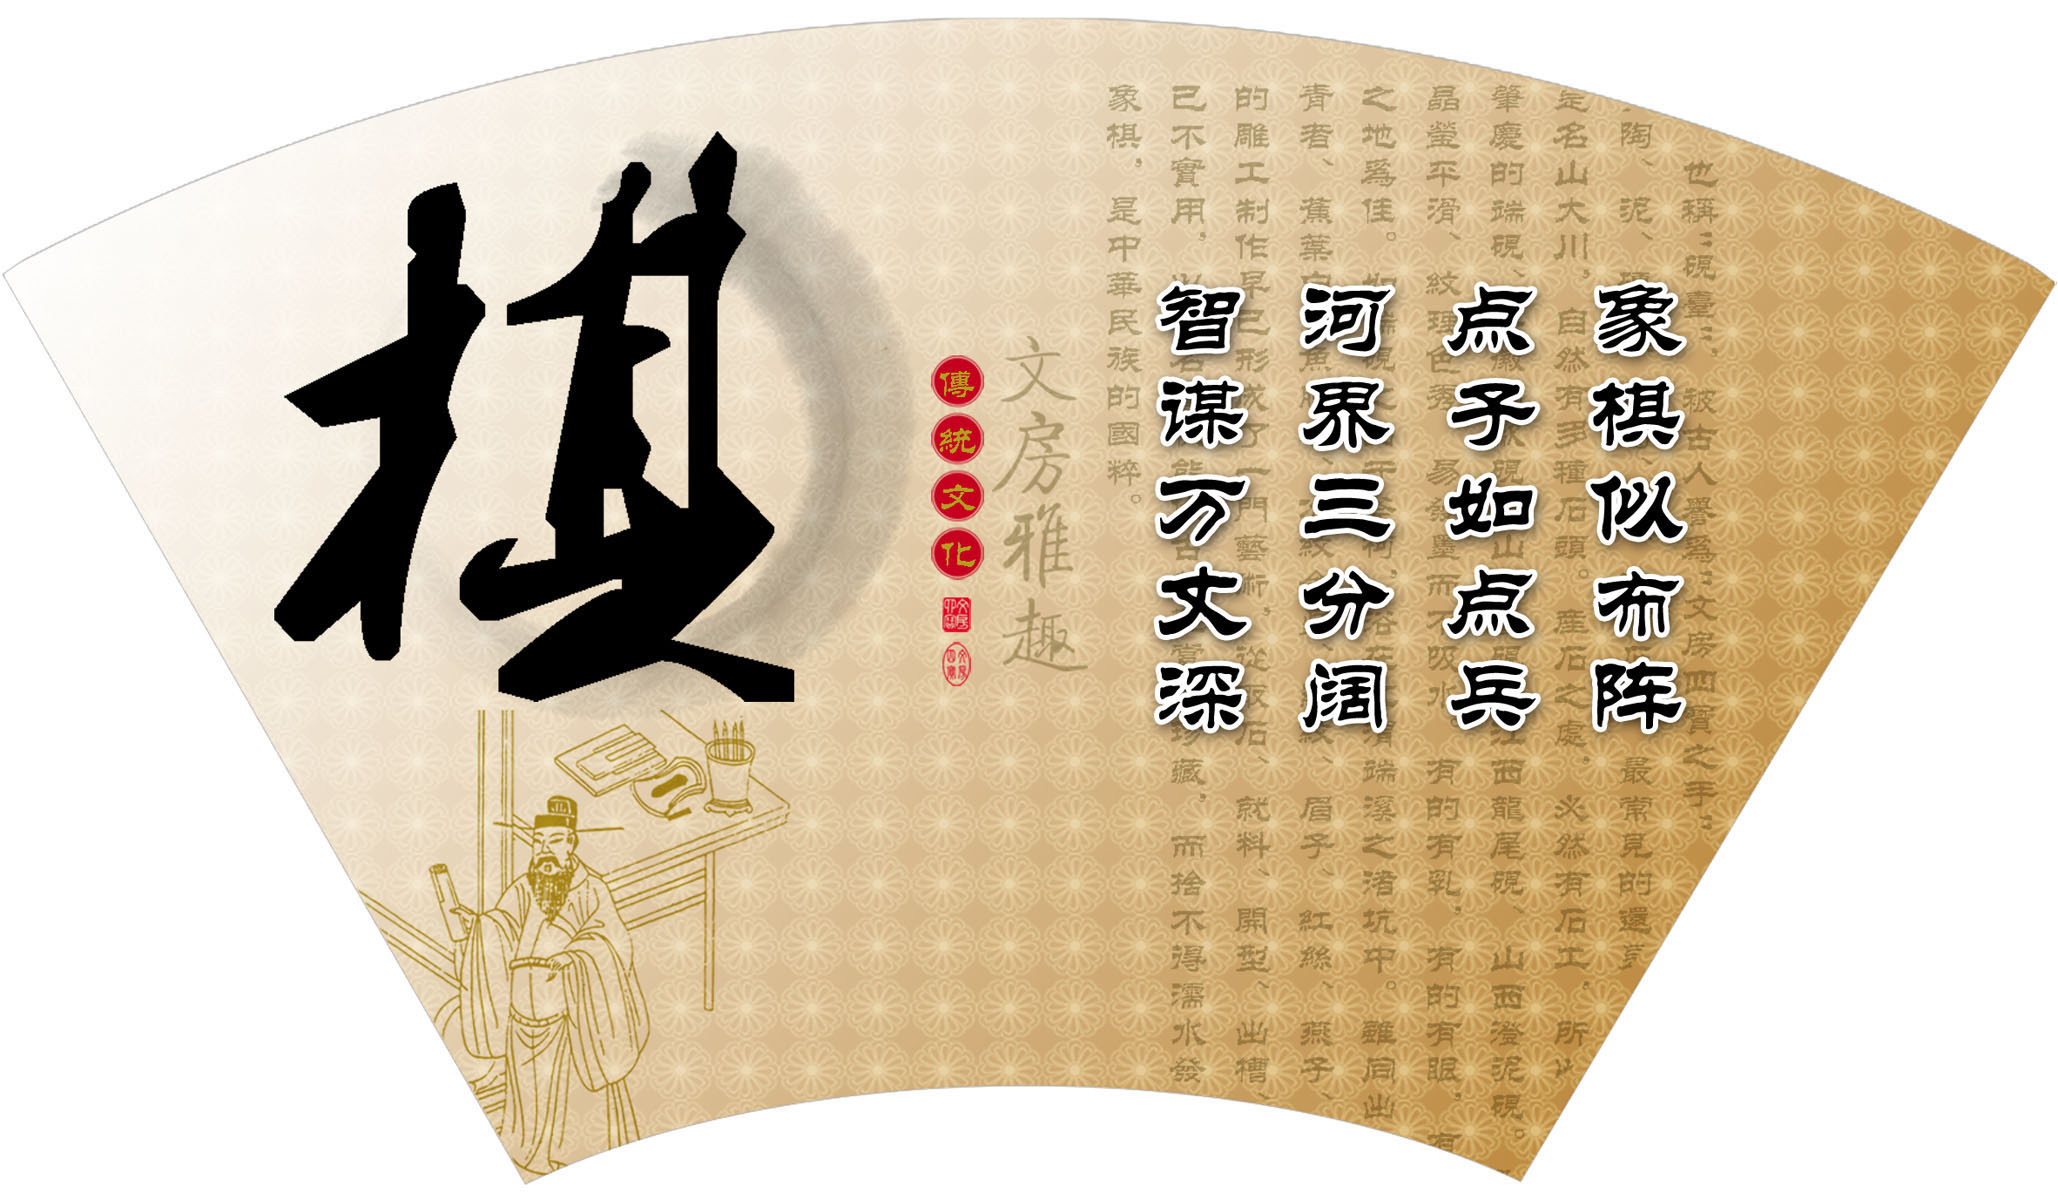 552海报展板素材215古典传统文化文房雅趣扇形之棋 个性定制